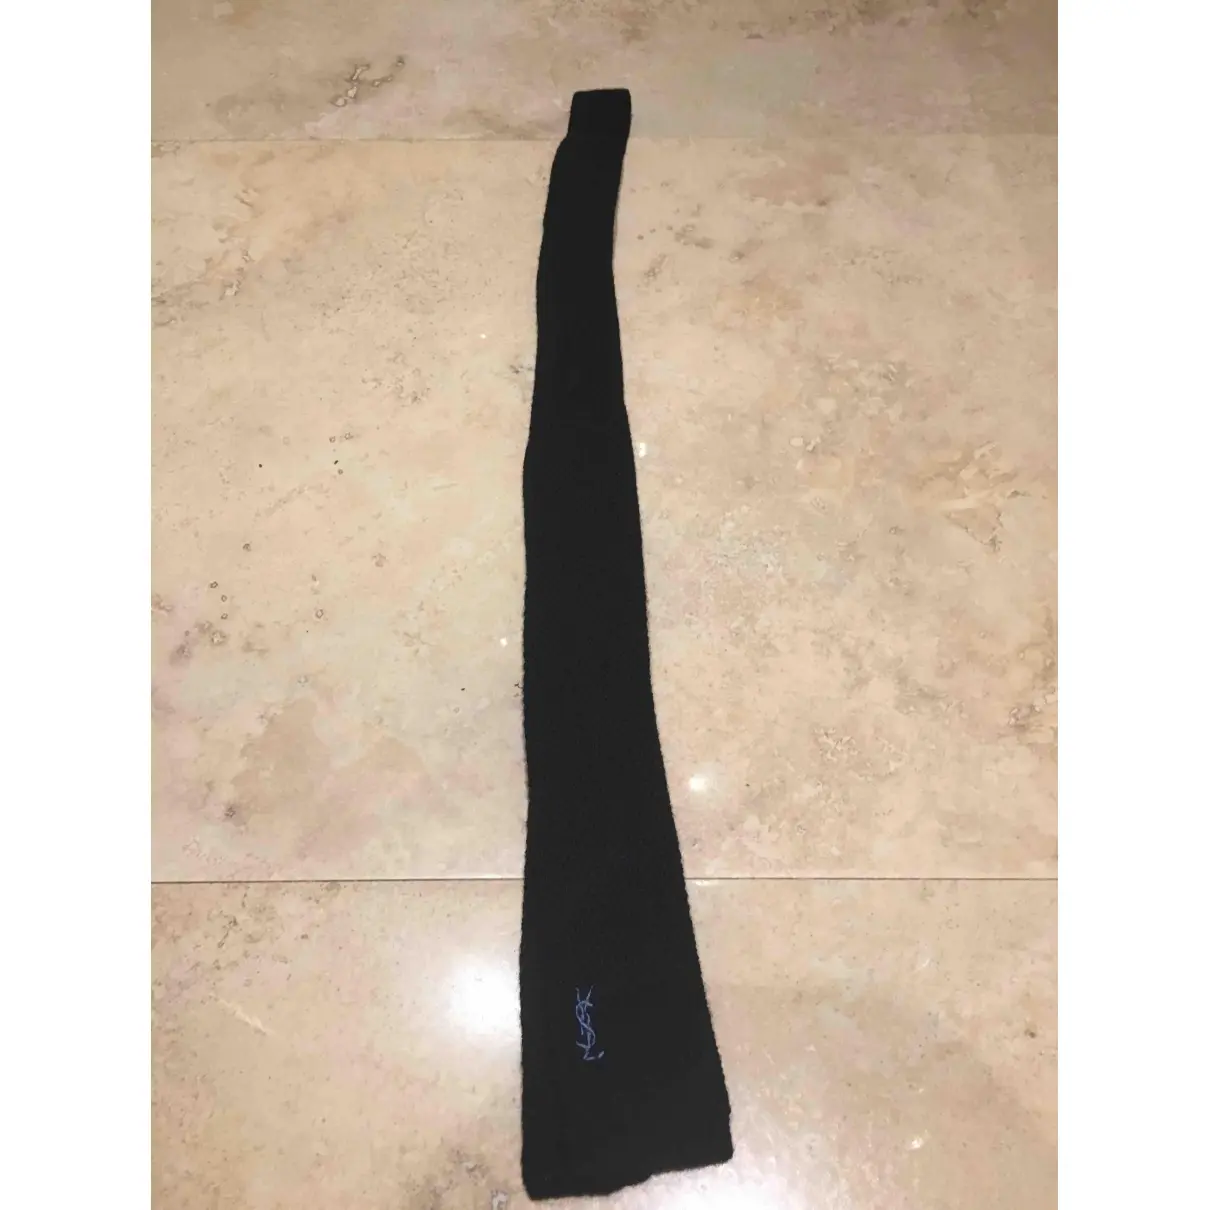 Yves Saint Laurent Wool tie for sale - Vintage